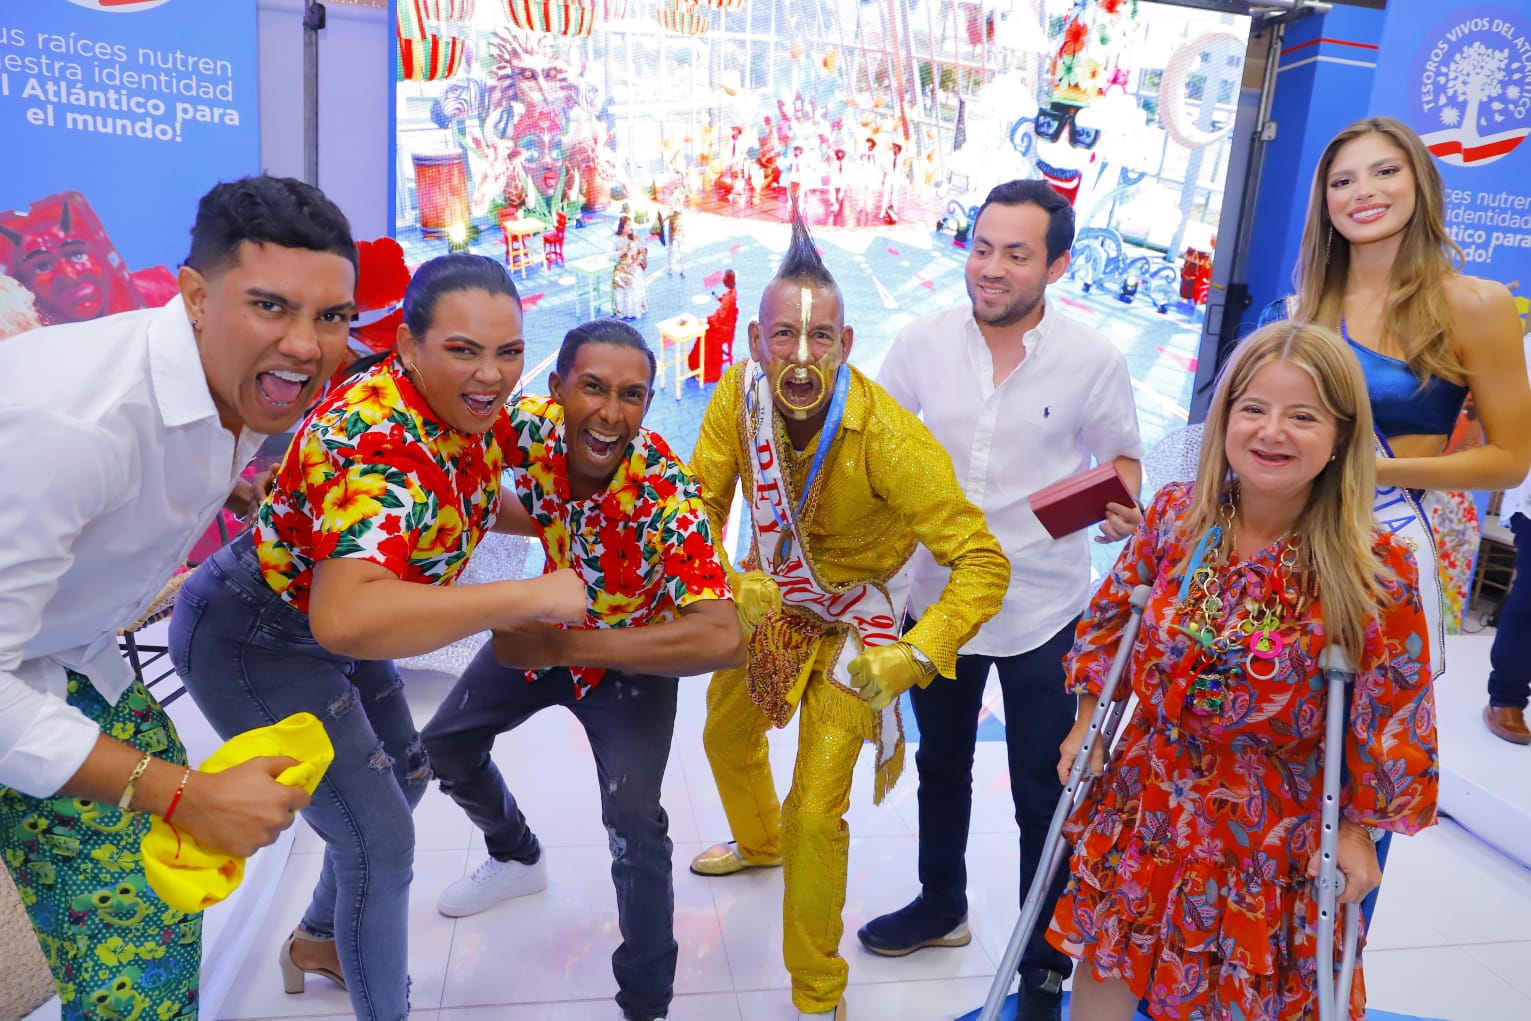 La Gobernadora Elsa Noguera condecorando a los hacedores del Carnaval.